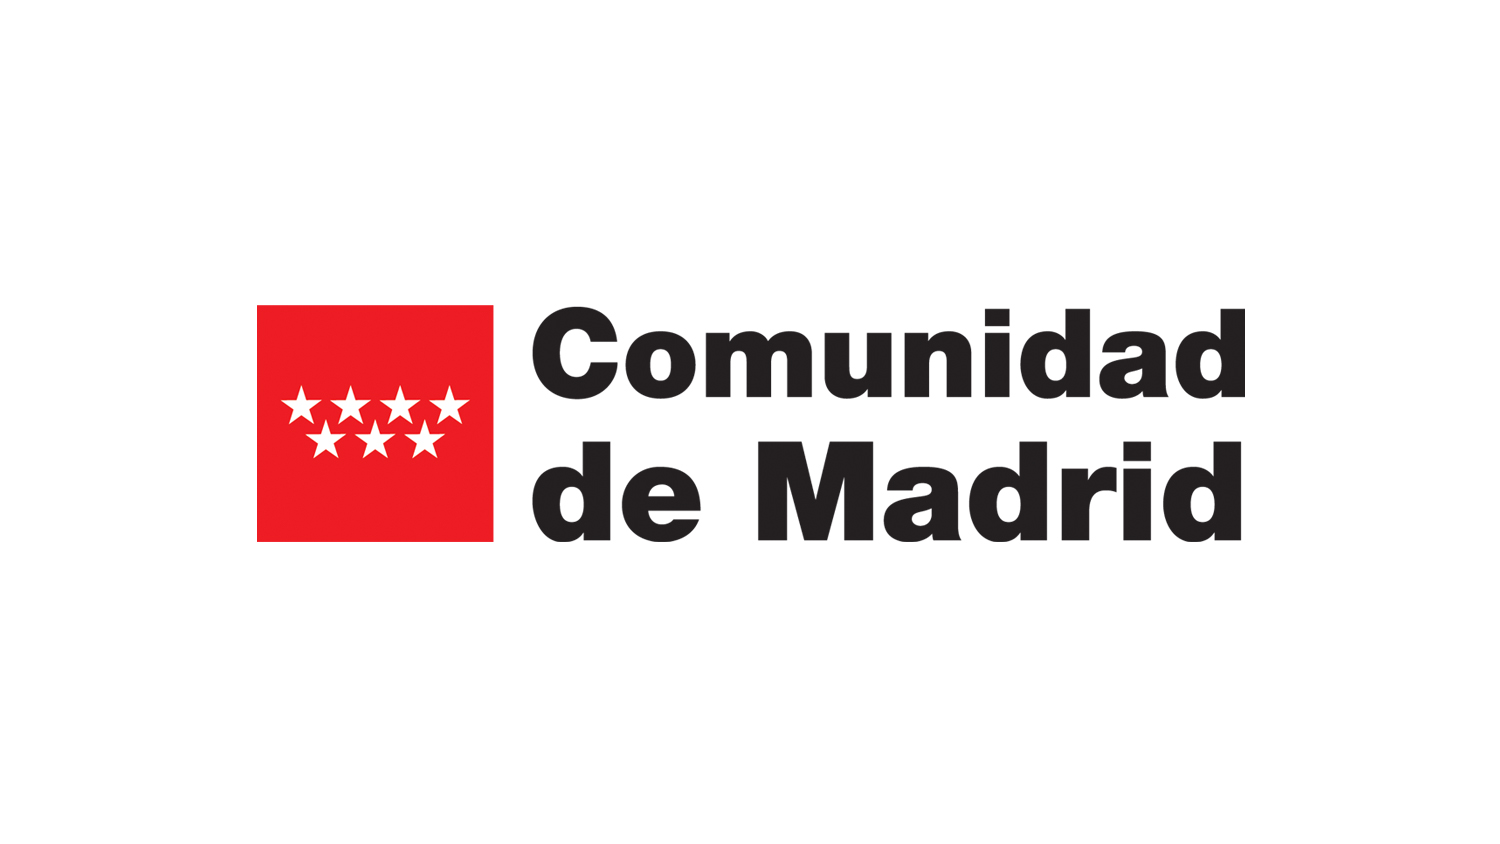 https://gnetwork360.com/2023/madrid/wp-content/uploads/2022/08/SPONSORS-G360-MAD-2022-COMUNIDAD-DE-MADRID.jpg